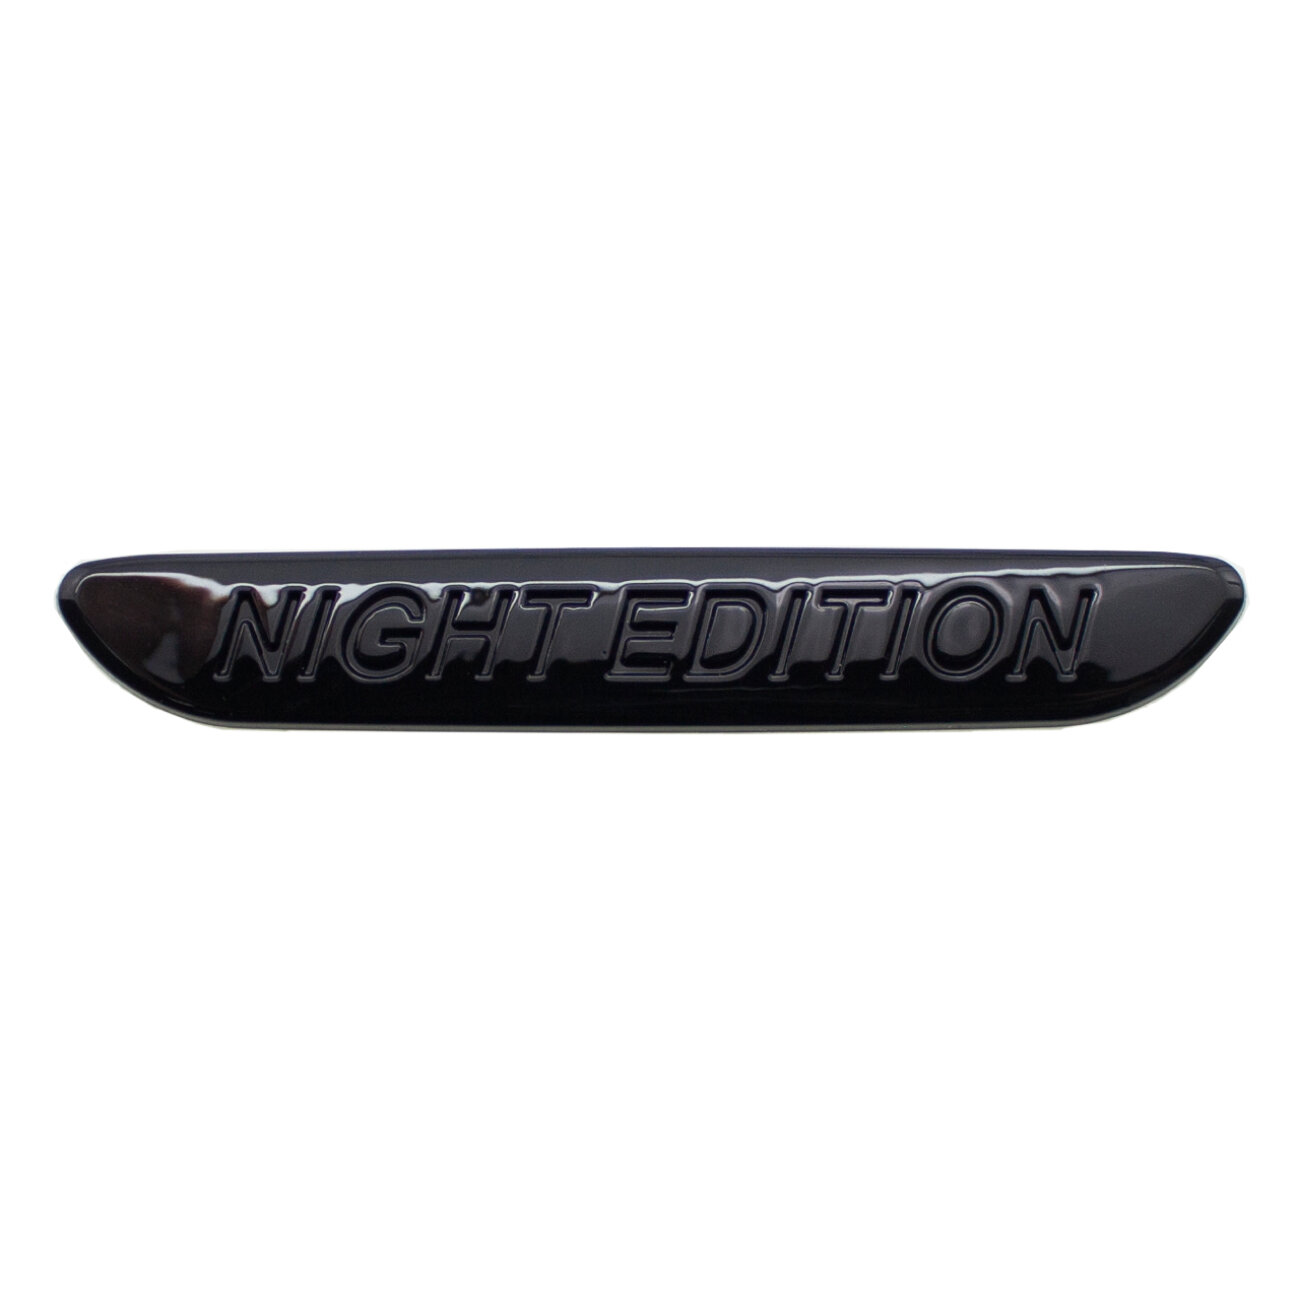 Эмблема на крыло для Mercedes-Benz Nigth Edition черный глянец